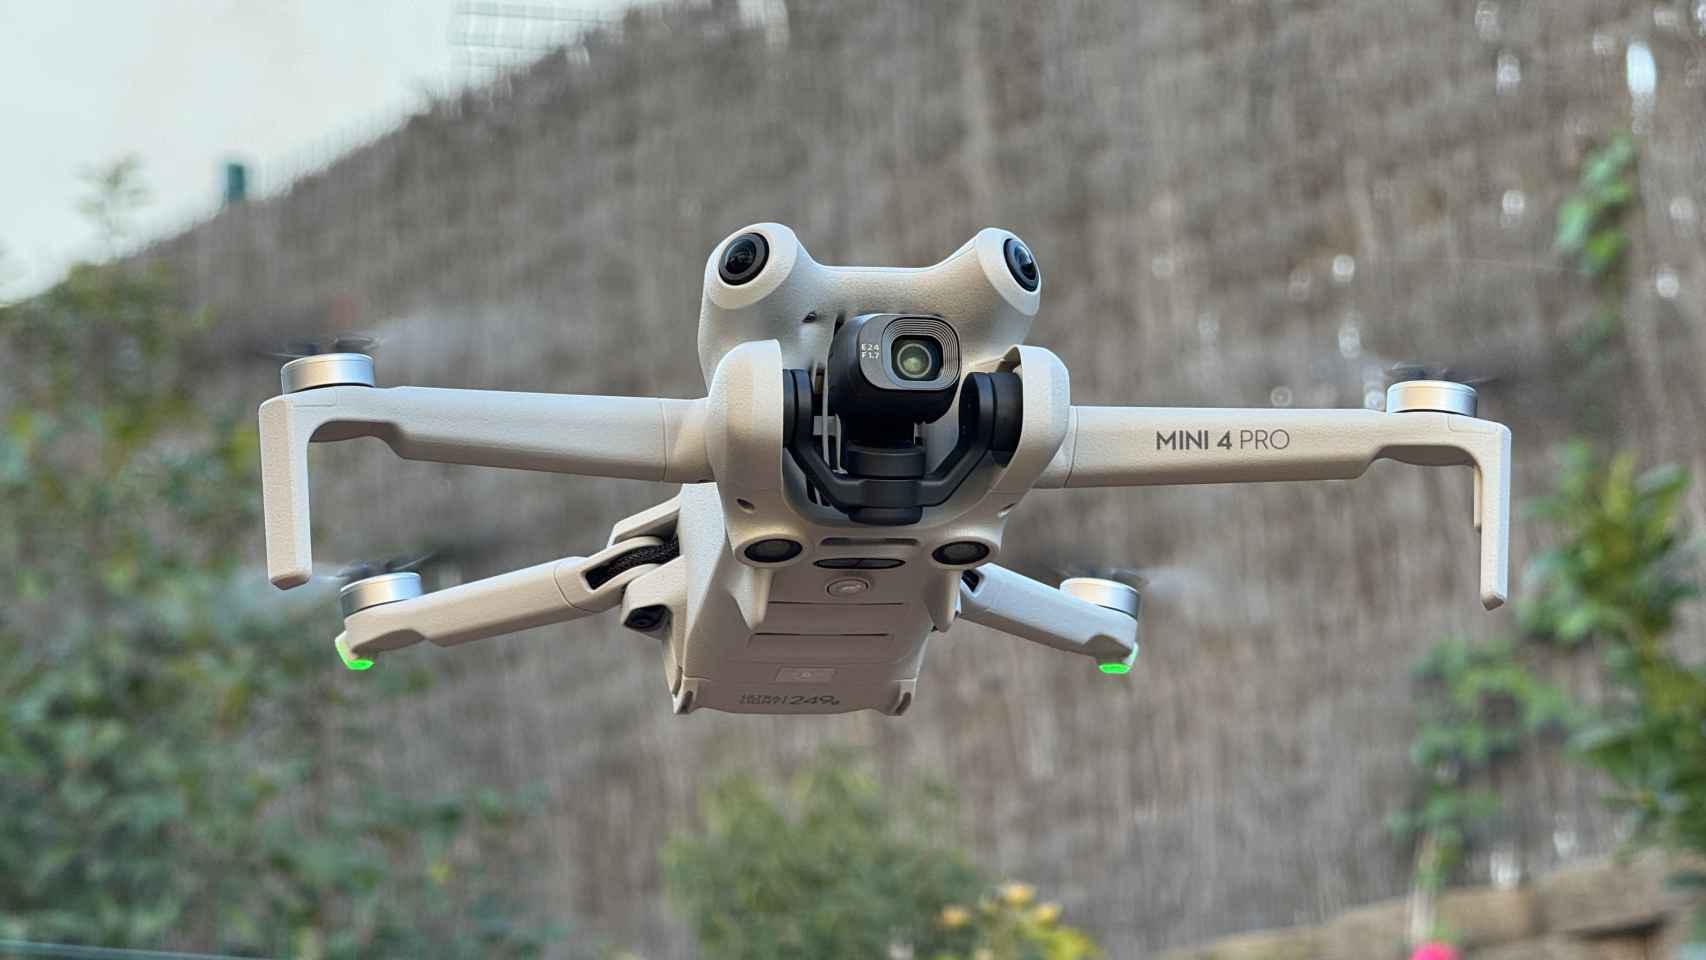 Probamos el DJI Mini 4 Pro, su nuevo dron pequeño y compacto para